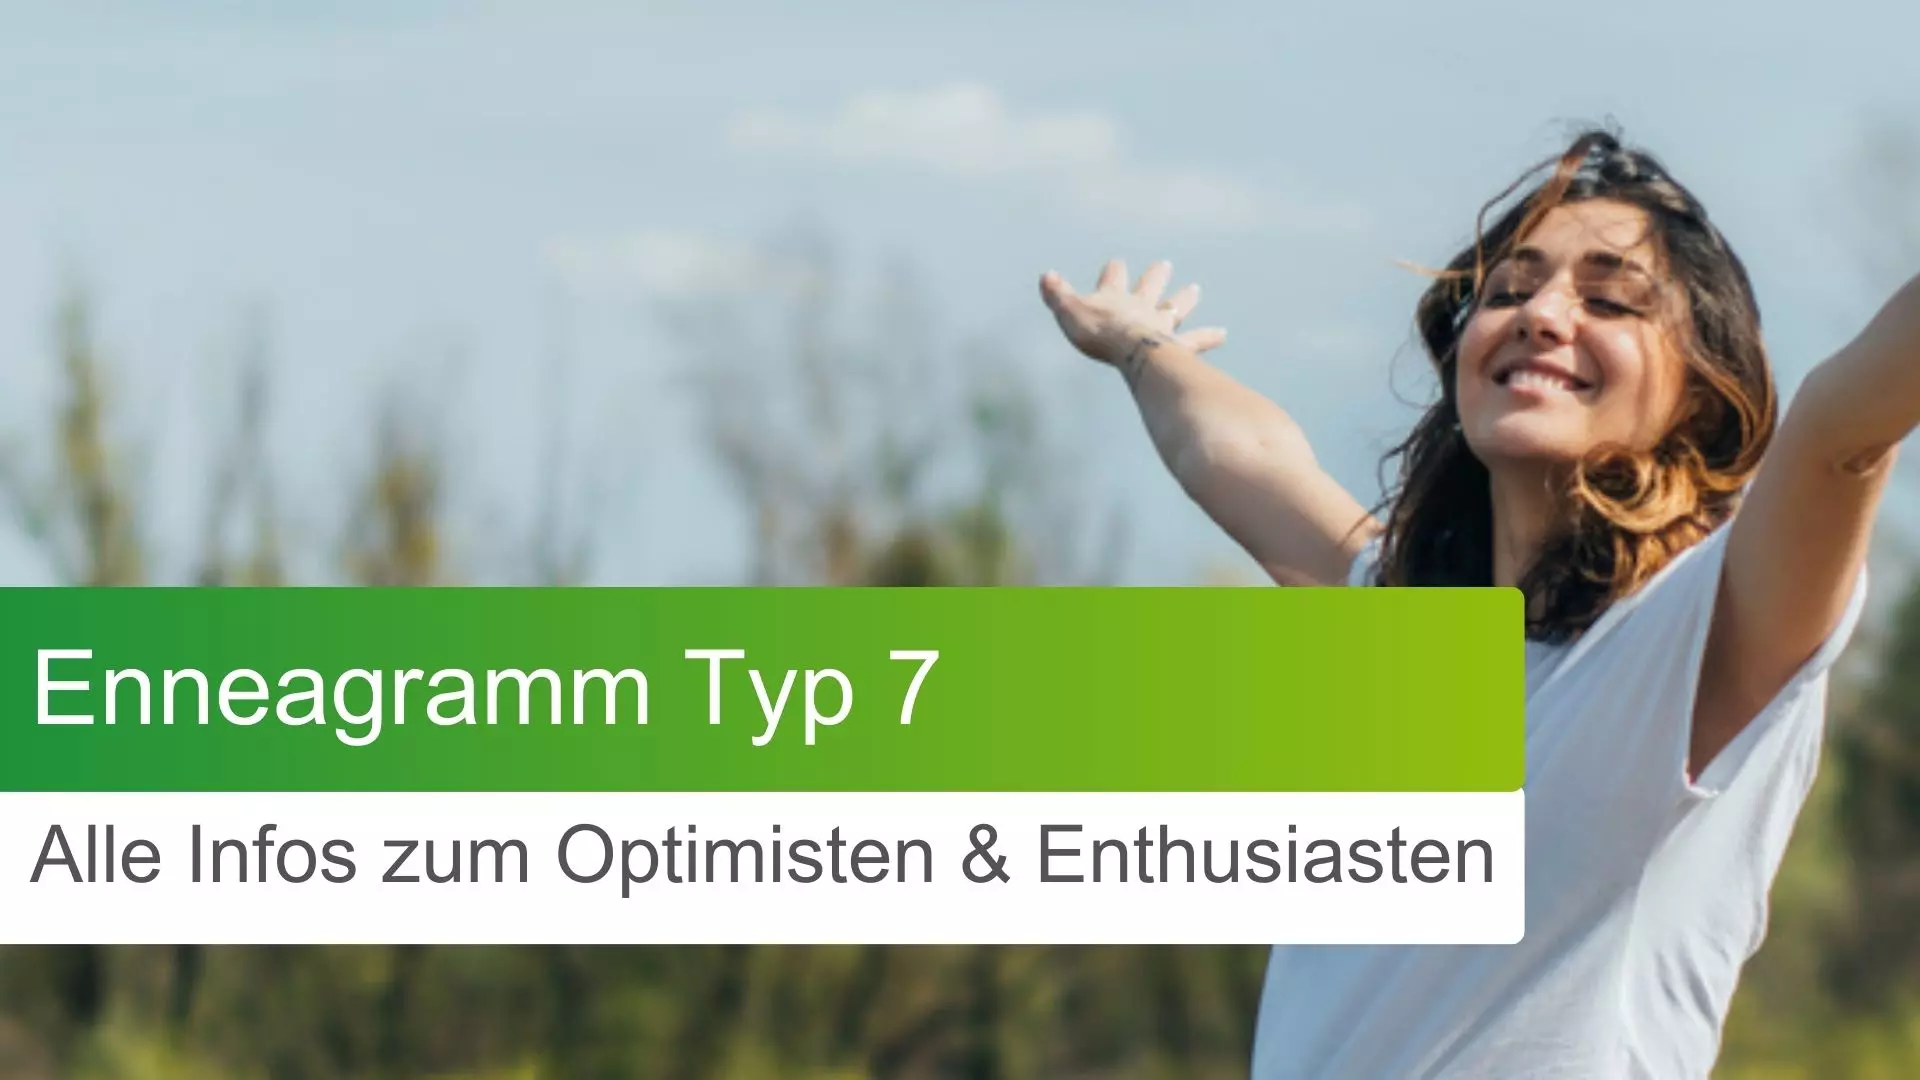 Enneagramm Typ 7: Alle Infos zum Optimisten & Enthusiasten